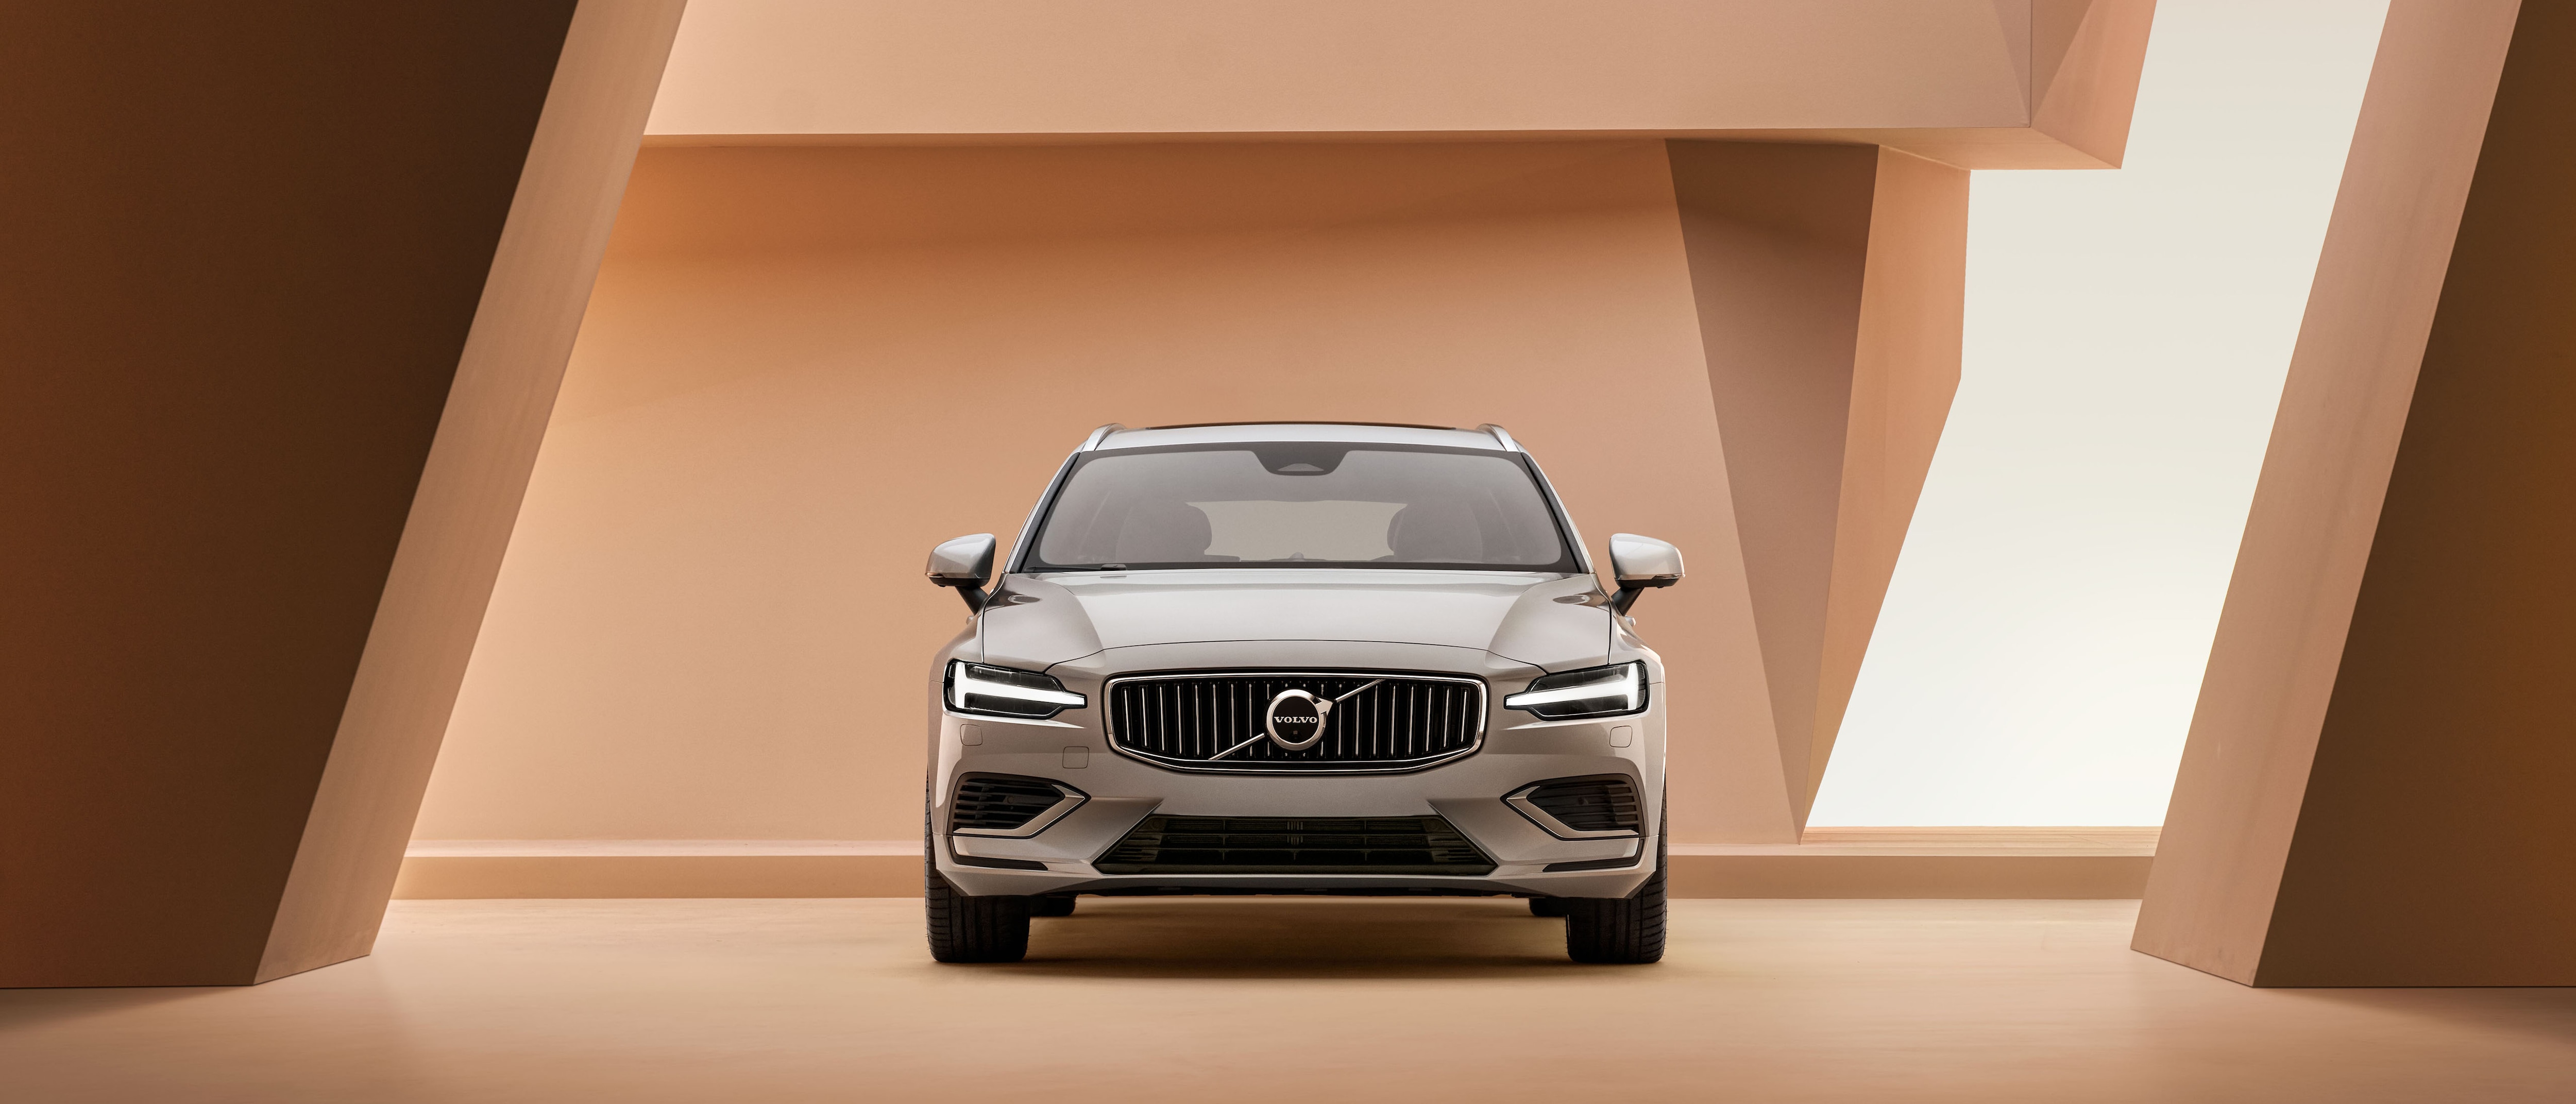 Grijze Volvo V60 Recharge in mooie architectonische ruimte.